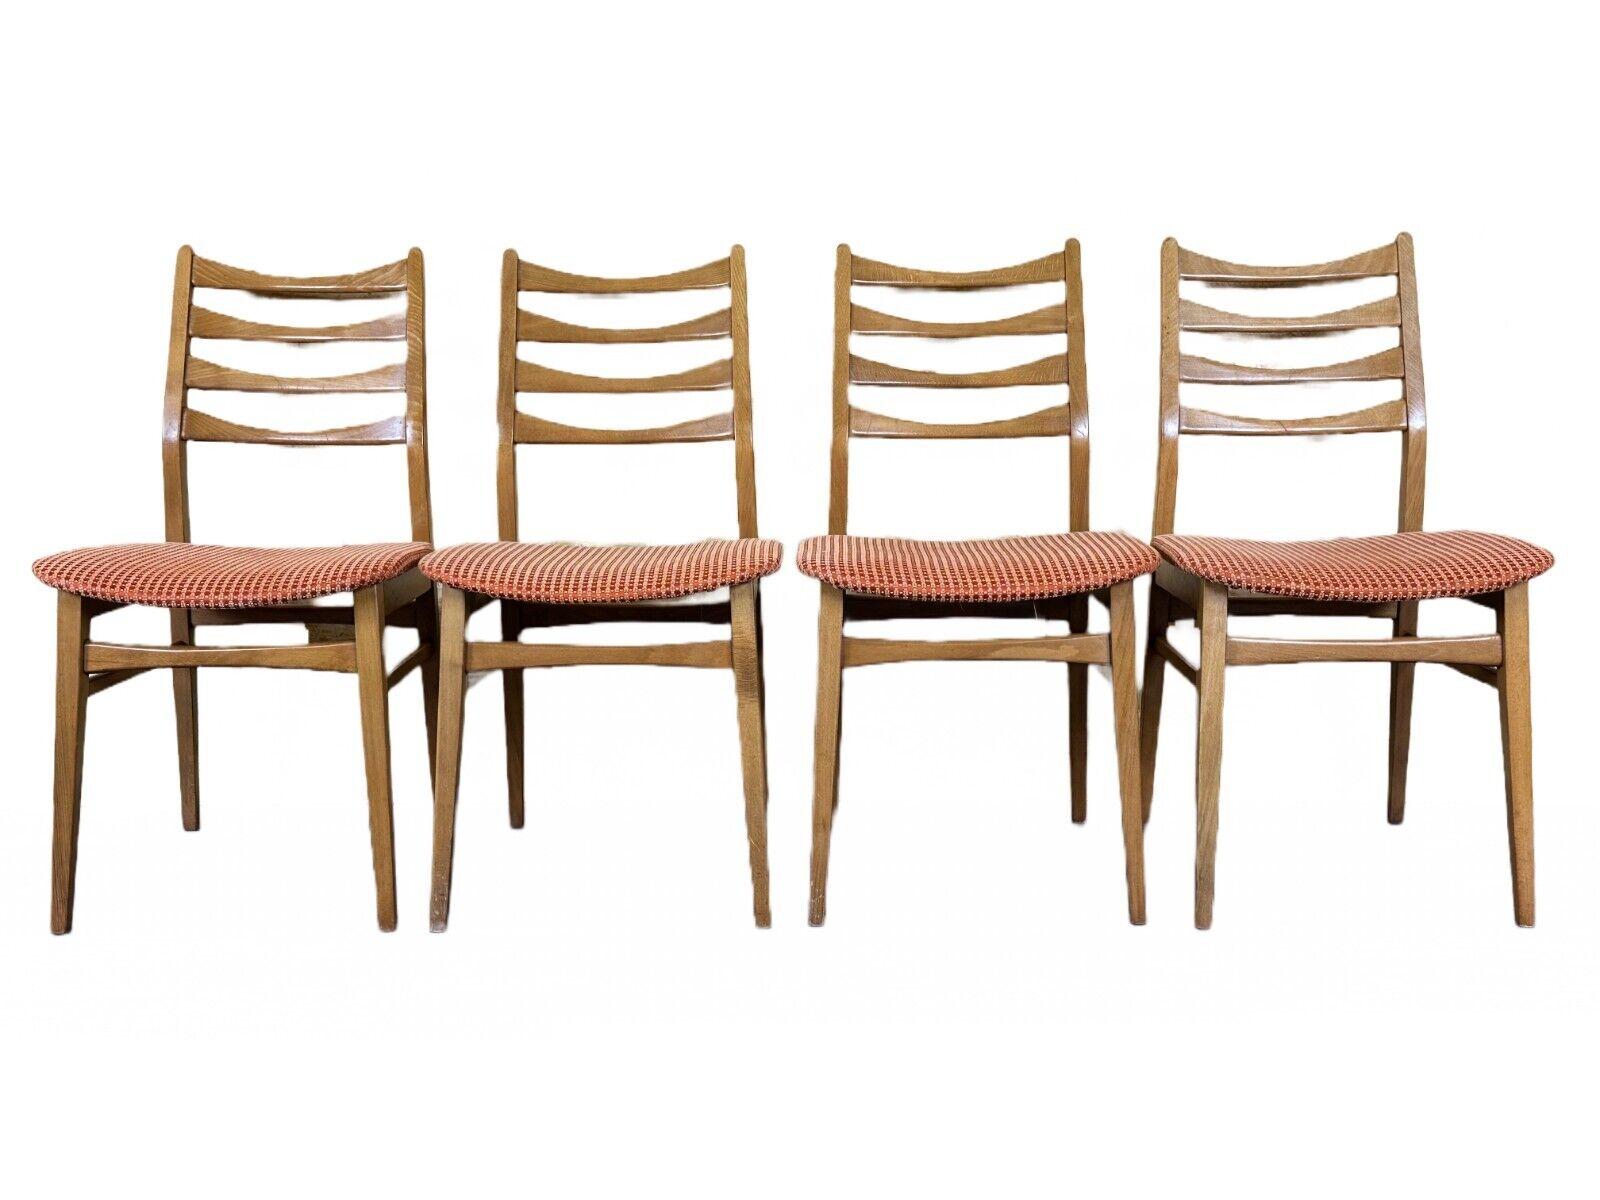 4x 60s 70s dining chair chaise de salle à manger mid century Danish modern design

Objet : 4x chaise

Fabricant :

Condit : bon

Âge : environ 1960-1970

Dimensions :

Largeur = 46,5 cm
Profondeur = 53,5 cm
Hauteur = 86,5 cm
Hauteur d'assise =